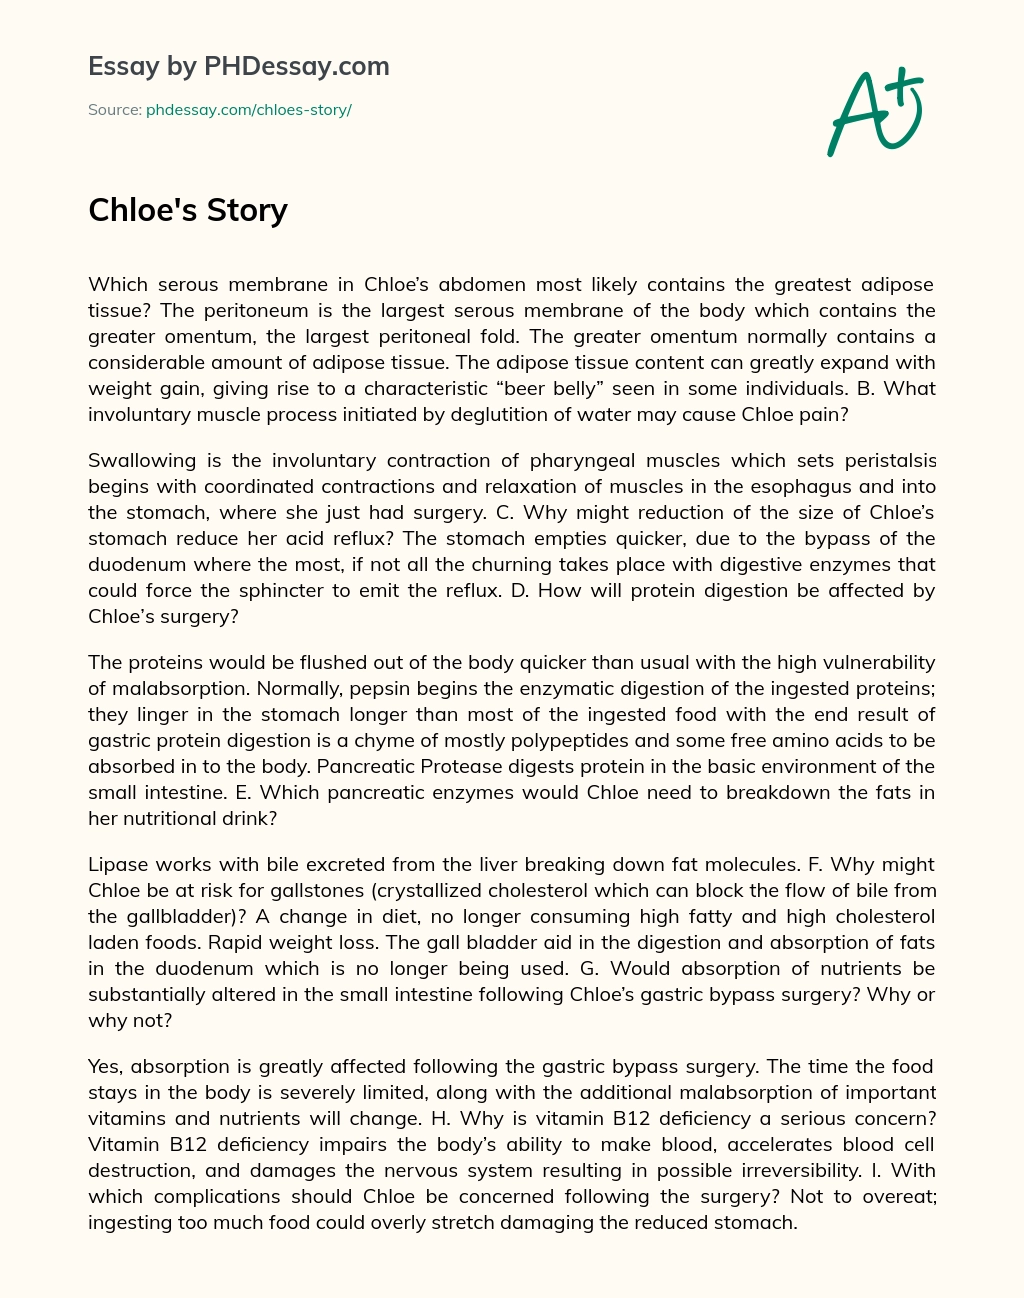 Chloe’s story essay